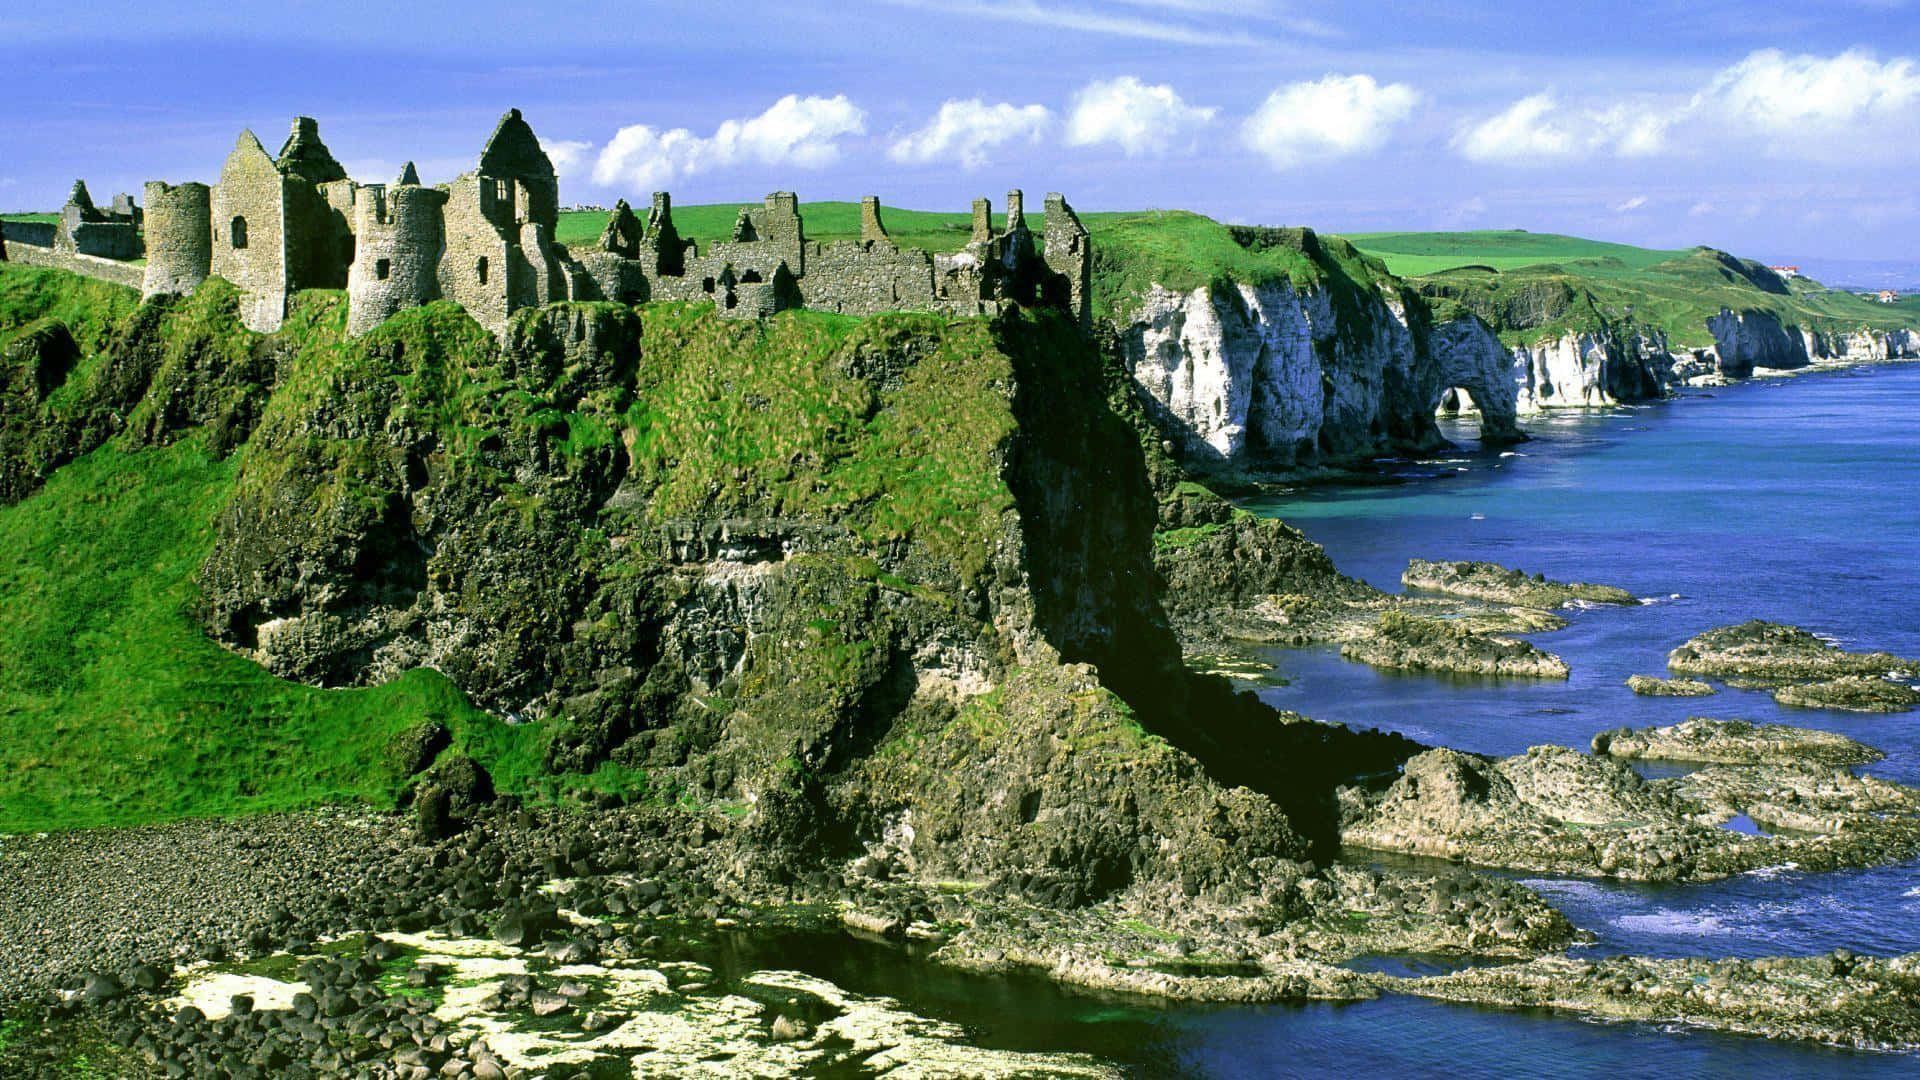 Ireland Desktop Wallpaper: Nếu bạn đam mê vẻ đẹp hoang sơ và xanh tươi của nước Ireland thì đừng bỏ lỡ ảnh nền máy tính vô cùng tuyệt đẹp này. Hãy tải về để thưởng thức trên chiếc máy tính yêu thích của bạn và đắm mình vào khung hình thanh bình, mộc mạc của thiên nhiên đất nước Emerald Isle này.